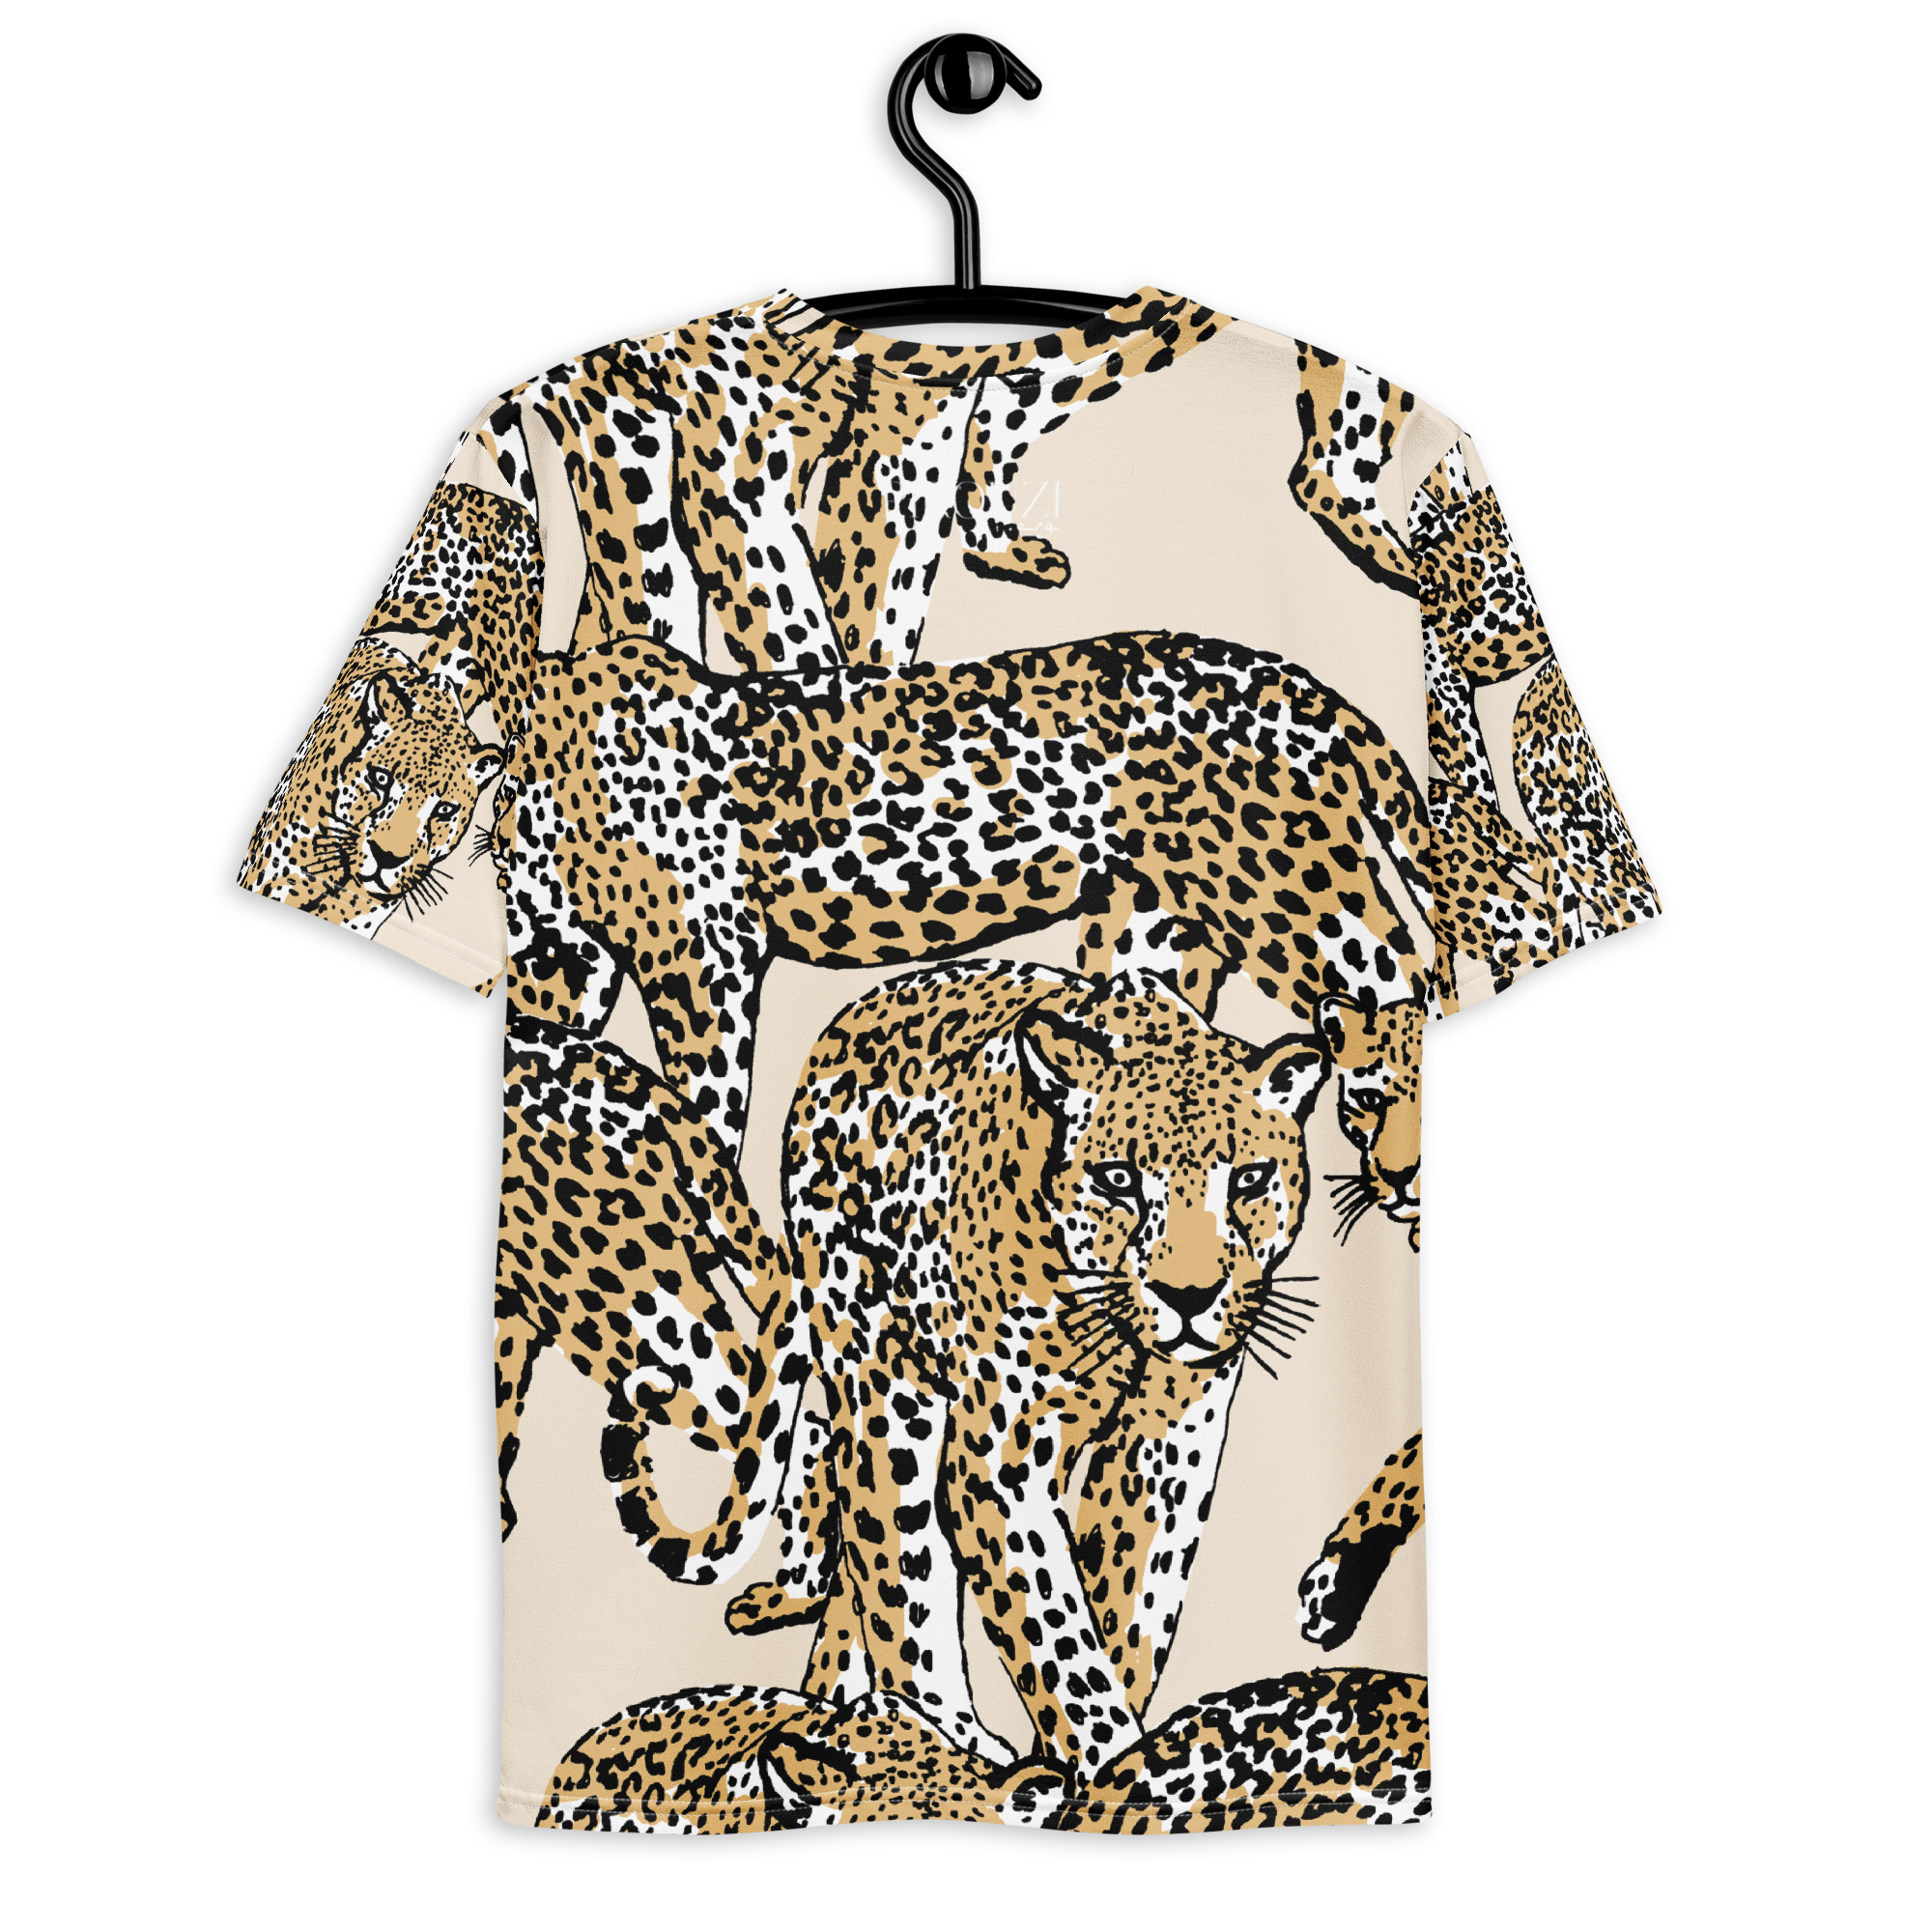 Pirouzi Athletics 'Pirouz the Cheetah' t-shirt